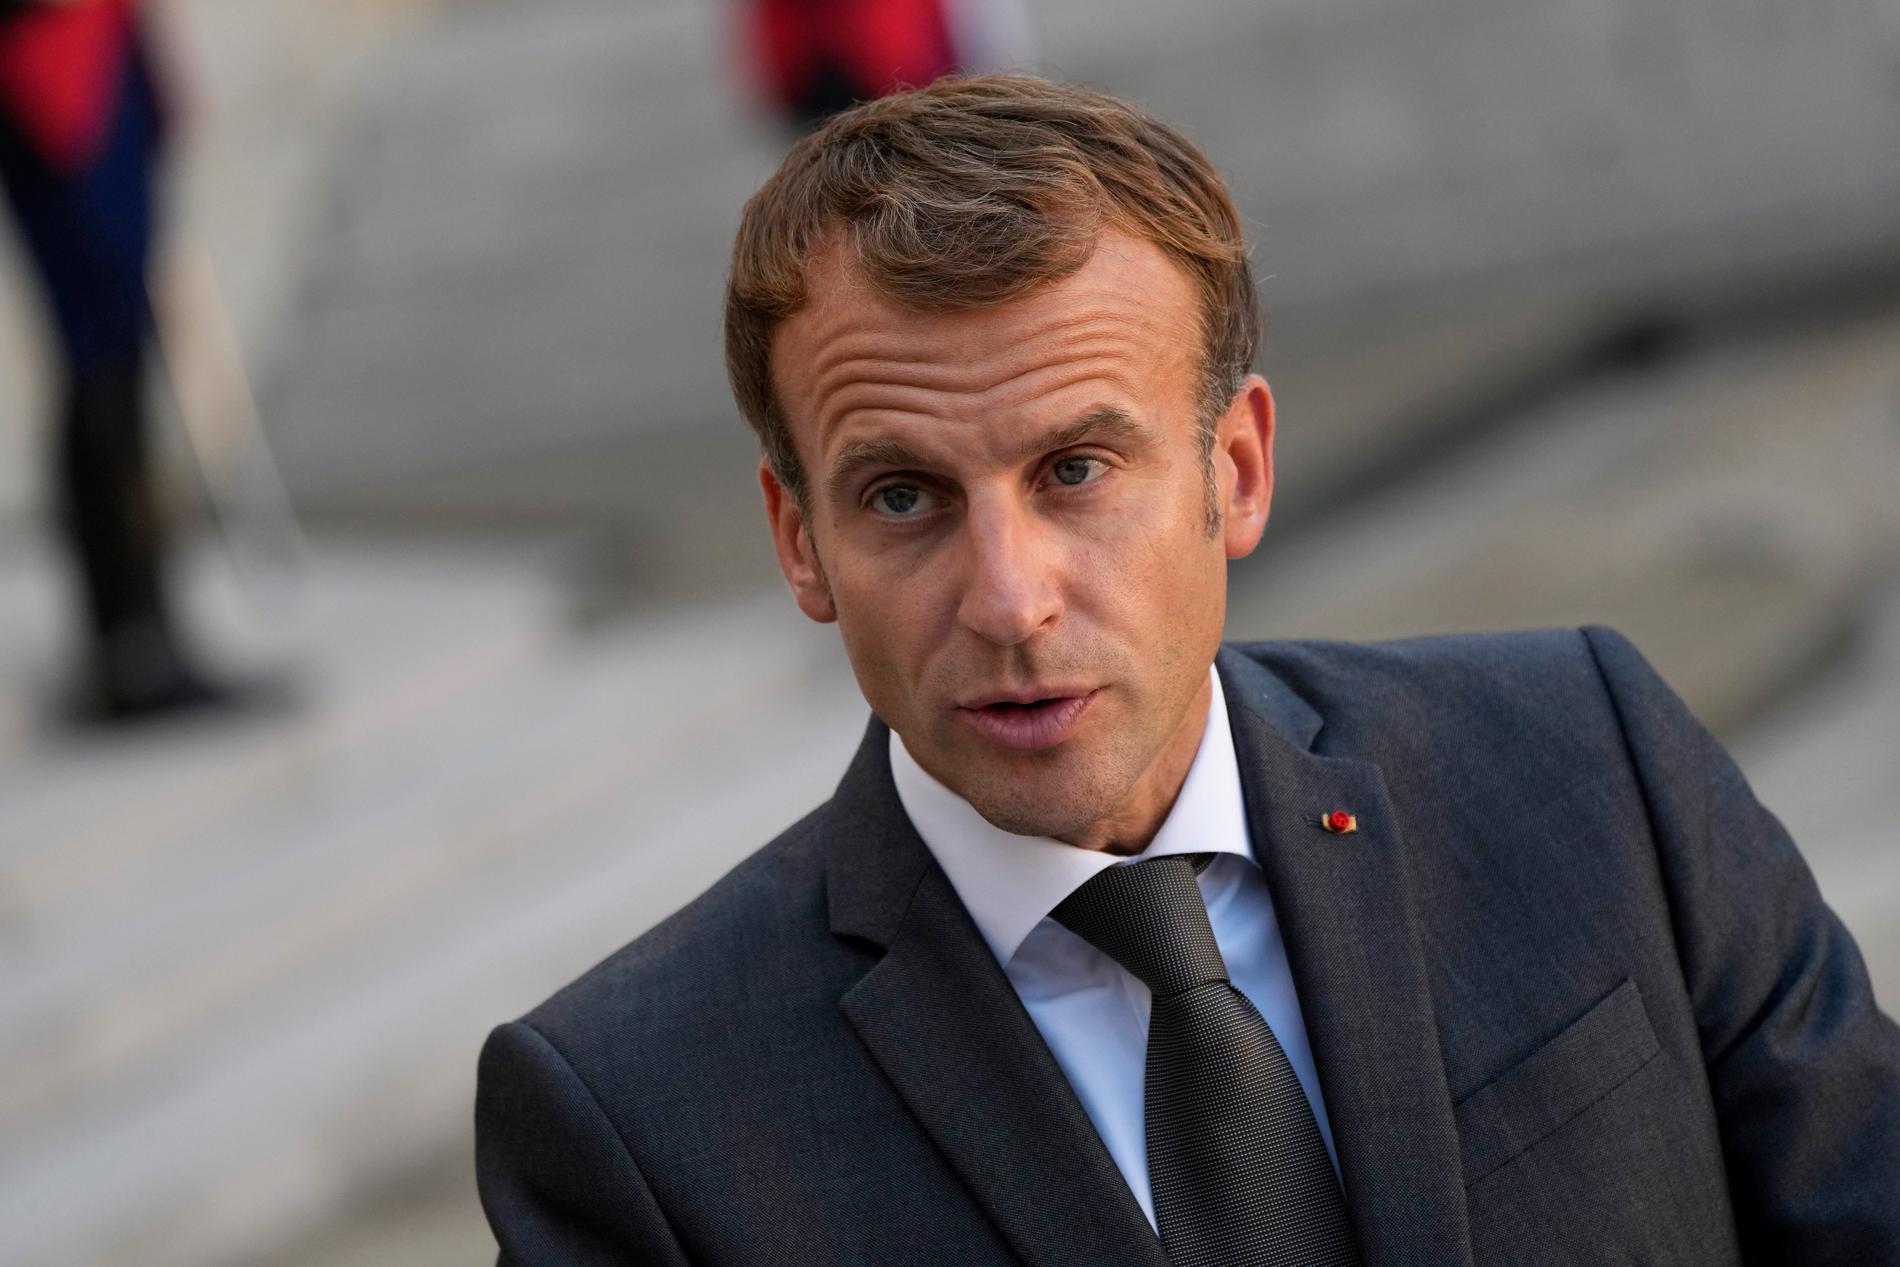 Frankrikes president Emmanuel Macron følte seg skitten etter å ha håndhilst på fattige mennesker under valgkampen i 2017, skrev det satiriske nettstedet Le Gorafi, og mange trodde at det var sant. 